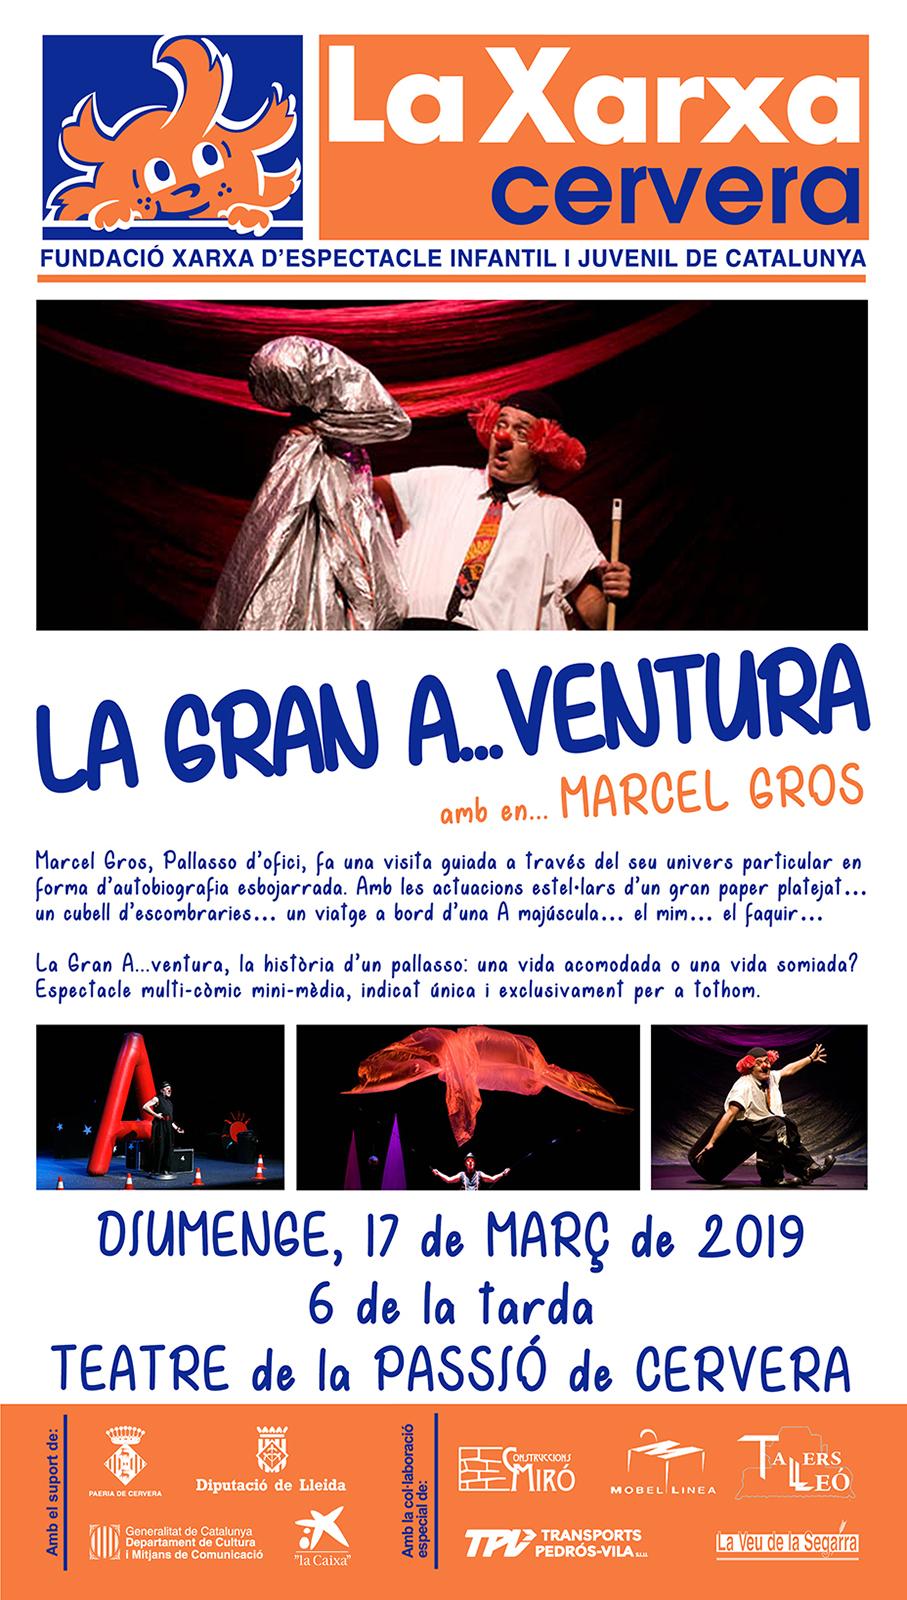 Teatre 'La gran A..ventura' amb Marcel Gros